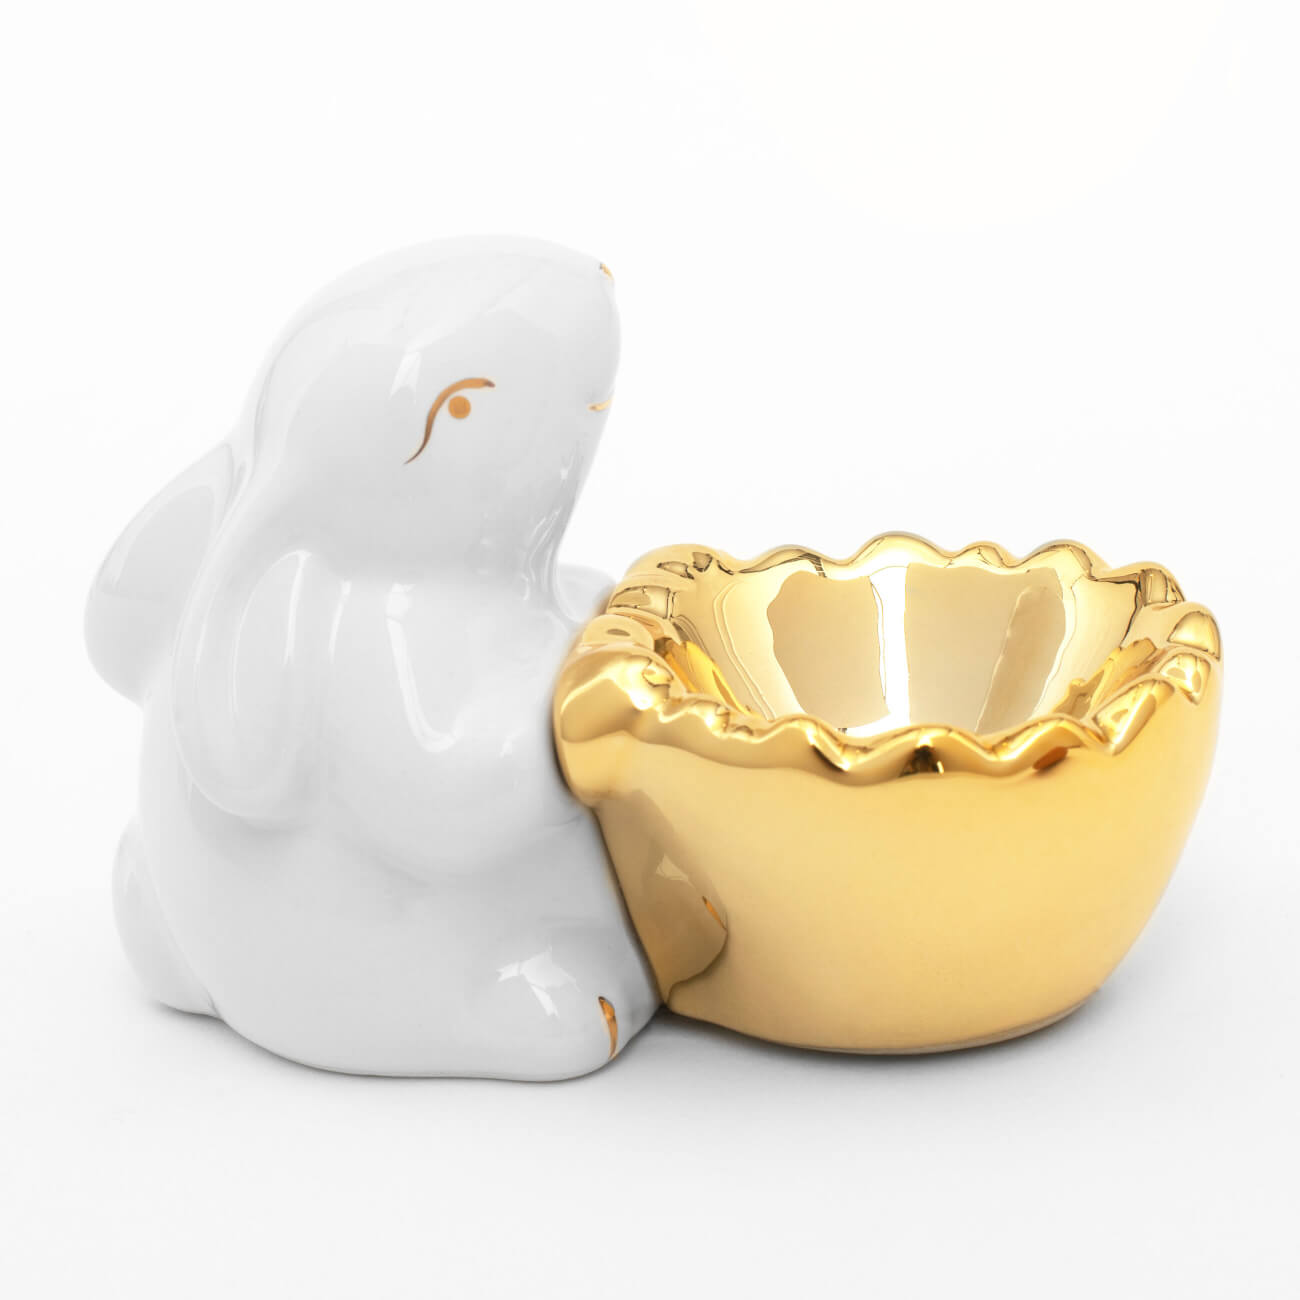 Подставка для яйца, 11 см, керамика, бело-золотистая, Кролик со скорлупой, Easter gold подставка для щетки и губки мультидом